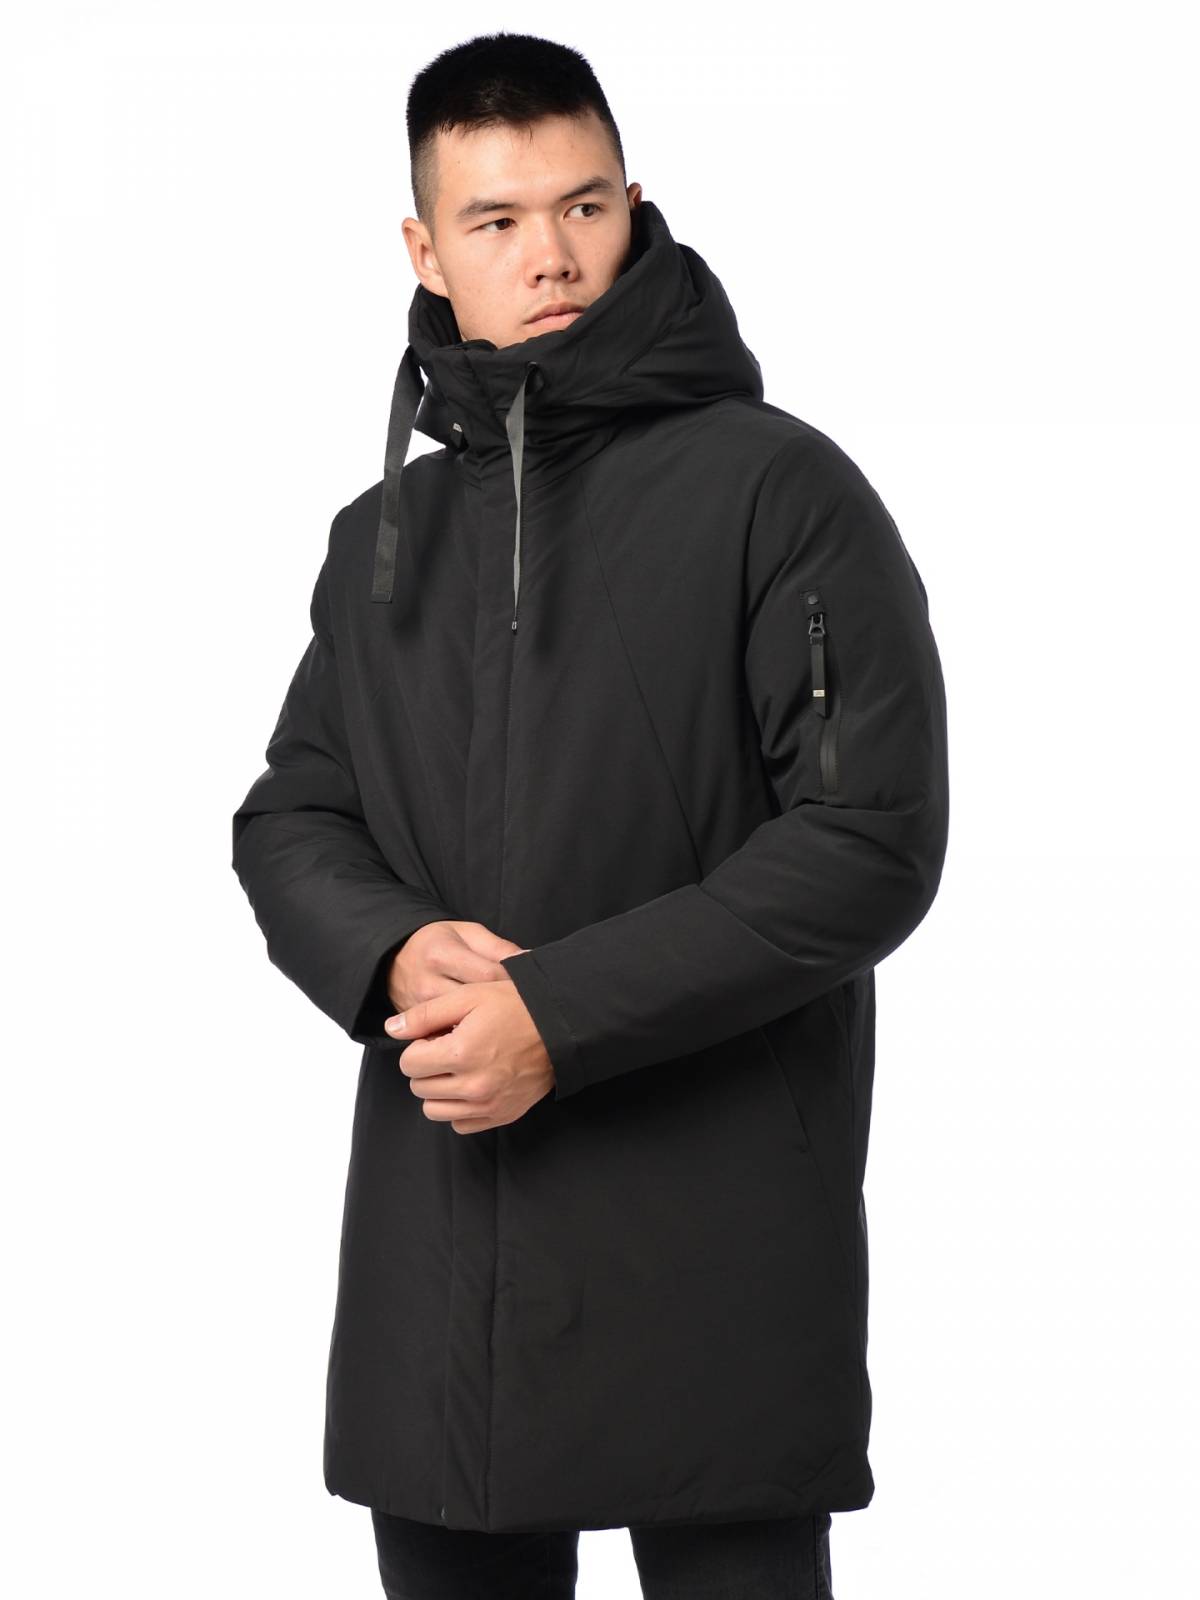 Зимняя куртка мужская Malidinu 3812 черная 52 RU